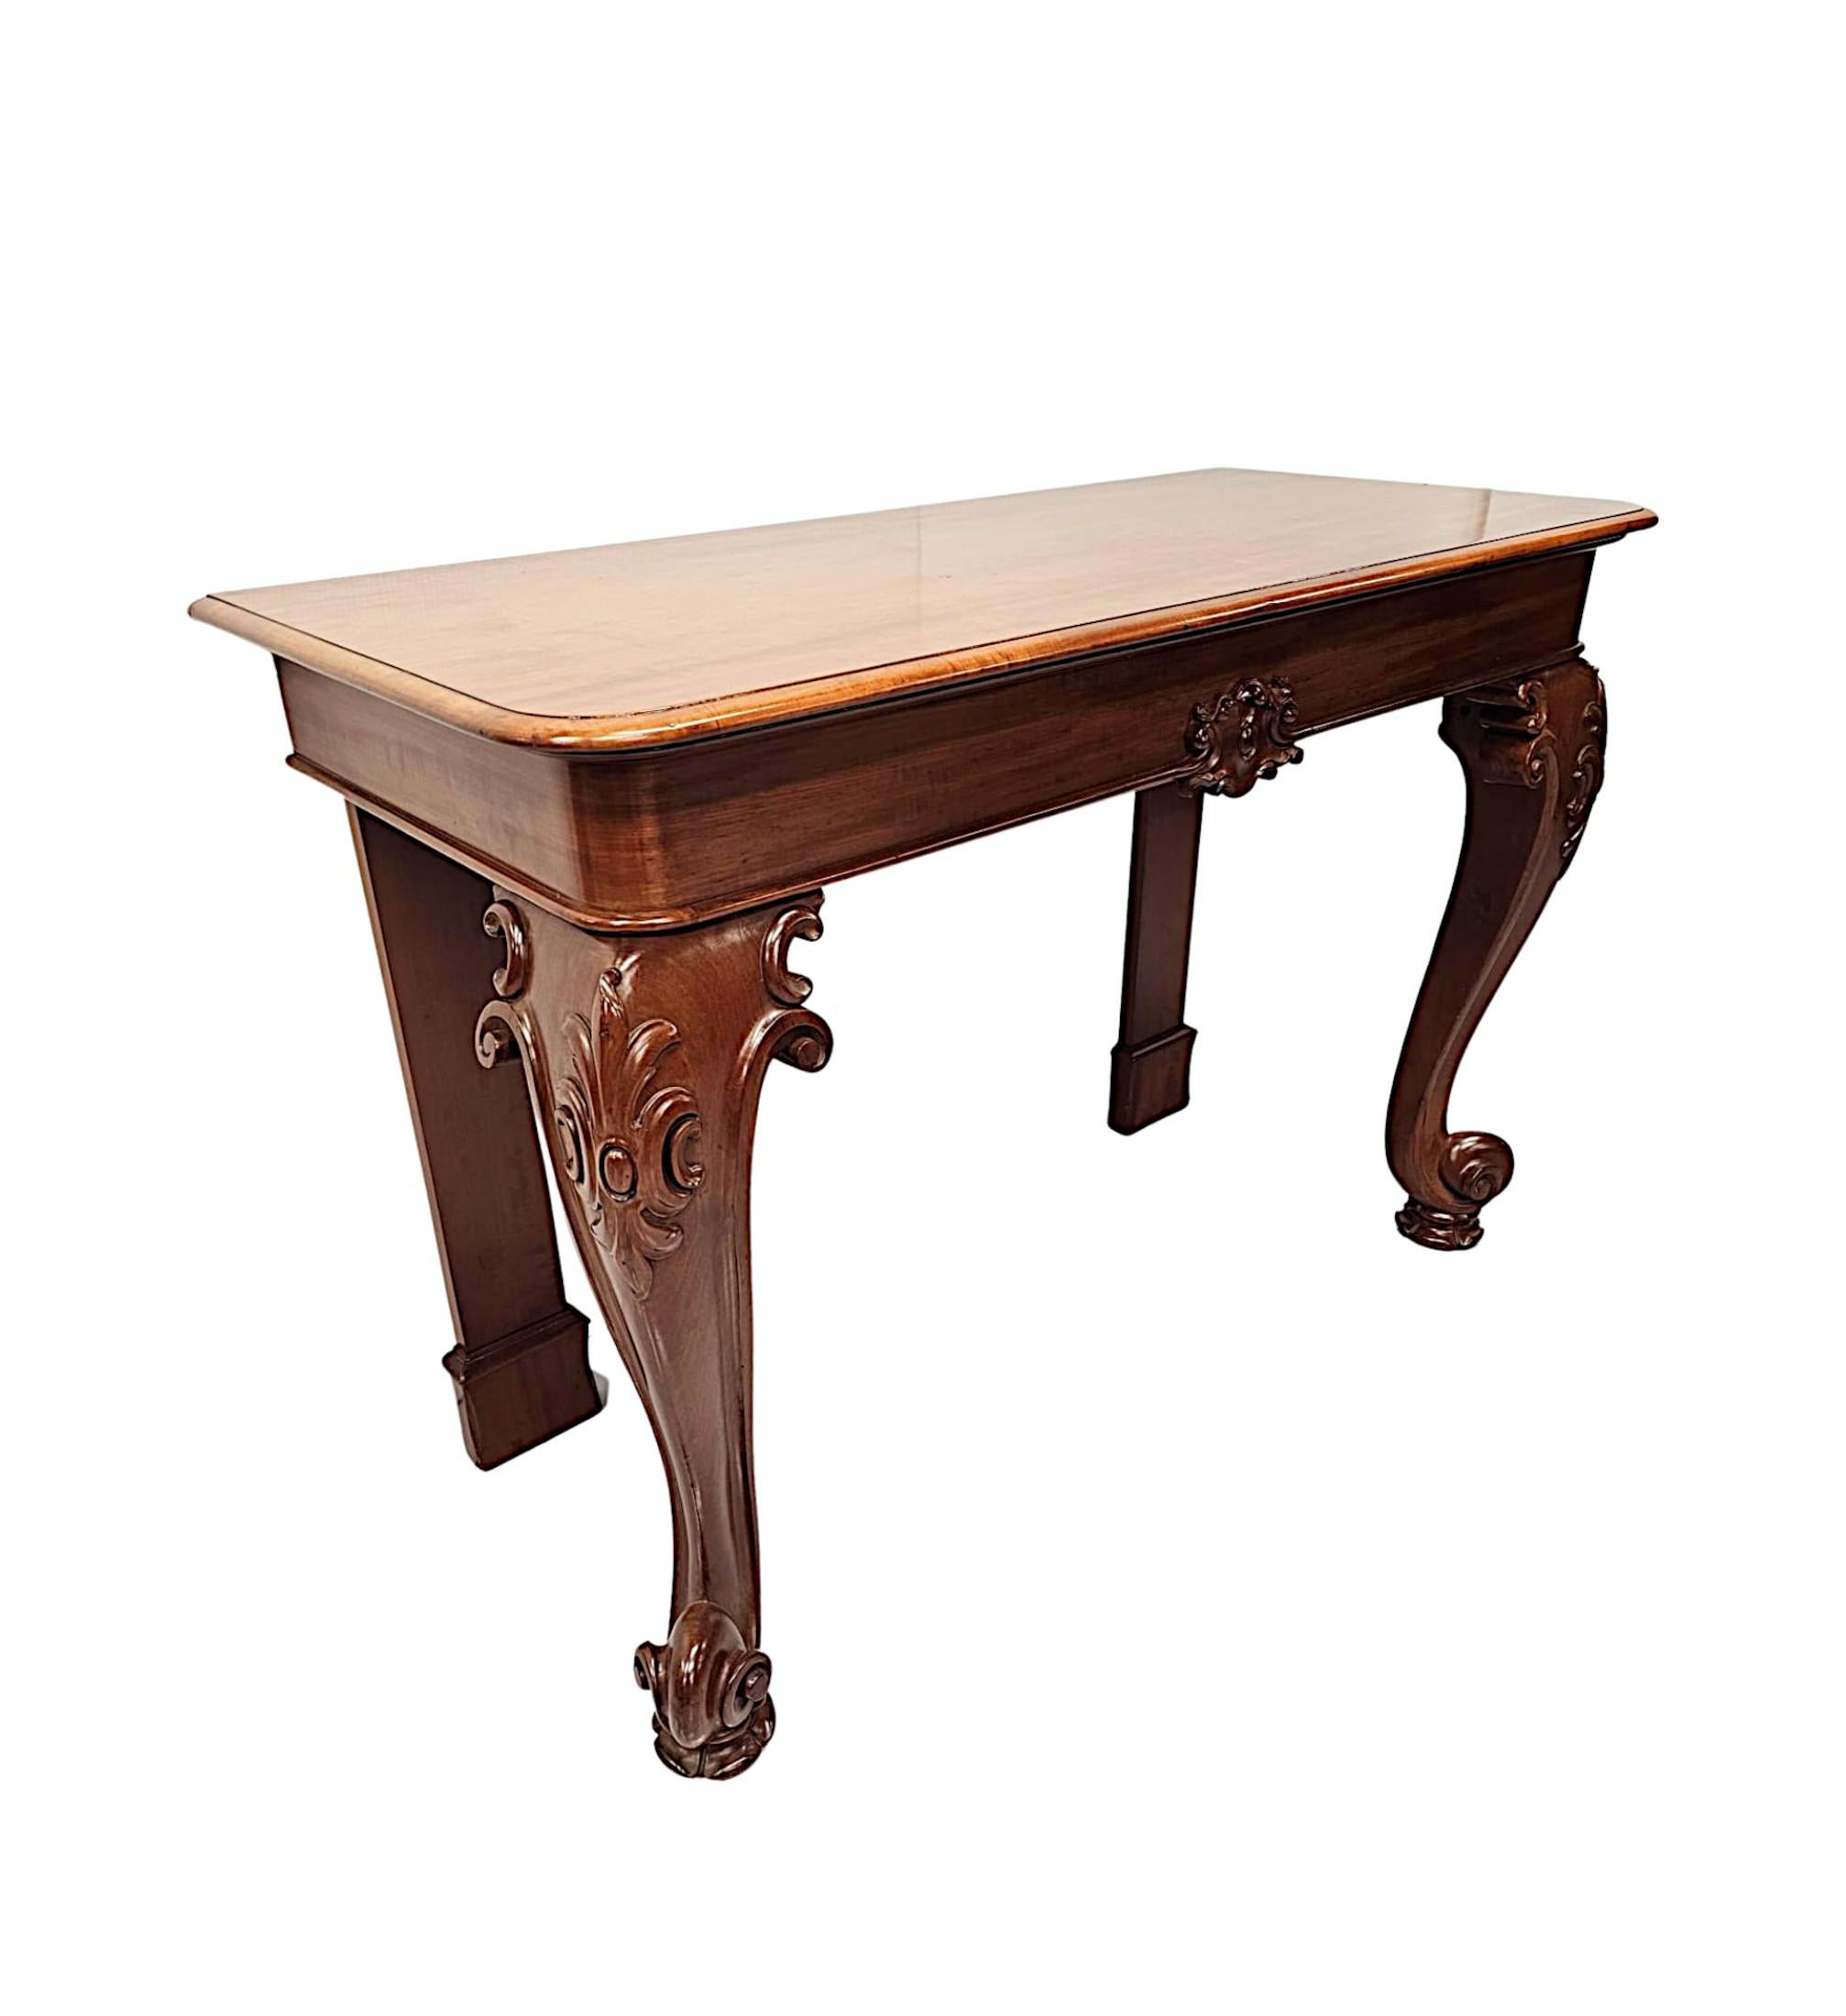 Très belle pièce du 19e siècle  Table console en acajou de fabuleuse qualité et étonnamment sculptée à la main avec une patine et un grain riches.  Le plateau bien figuré et mouluré de forme rectangulaire est surmonté d'une frise simple ornée d'un